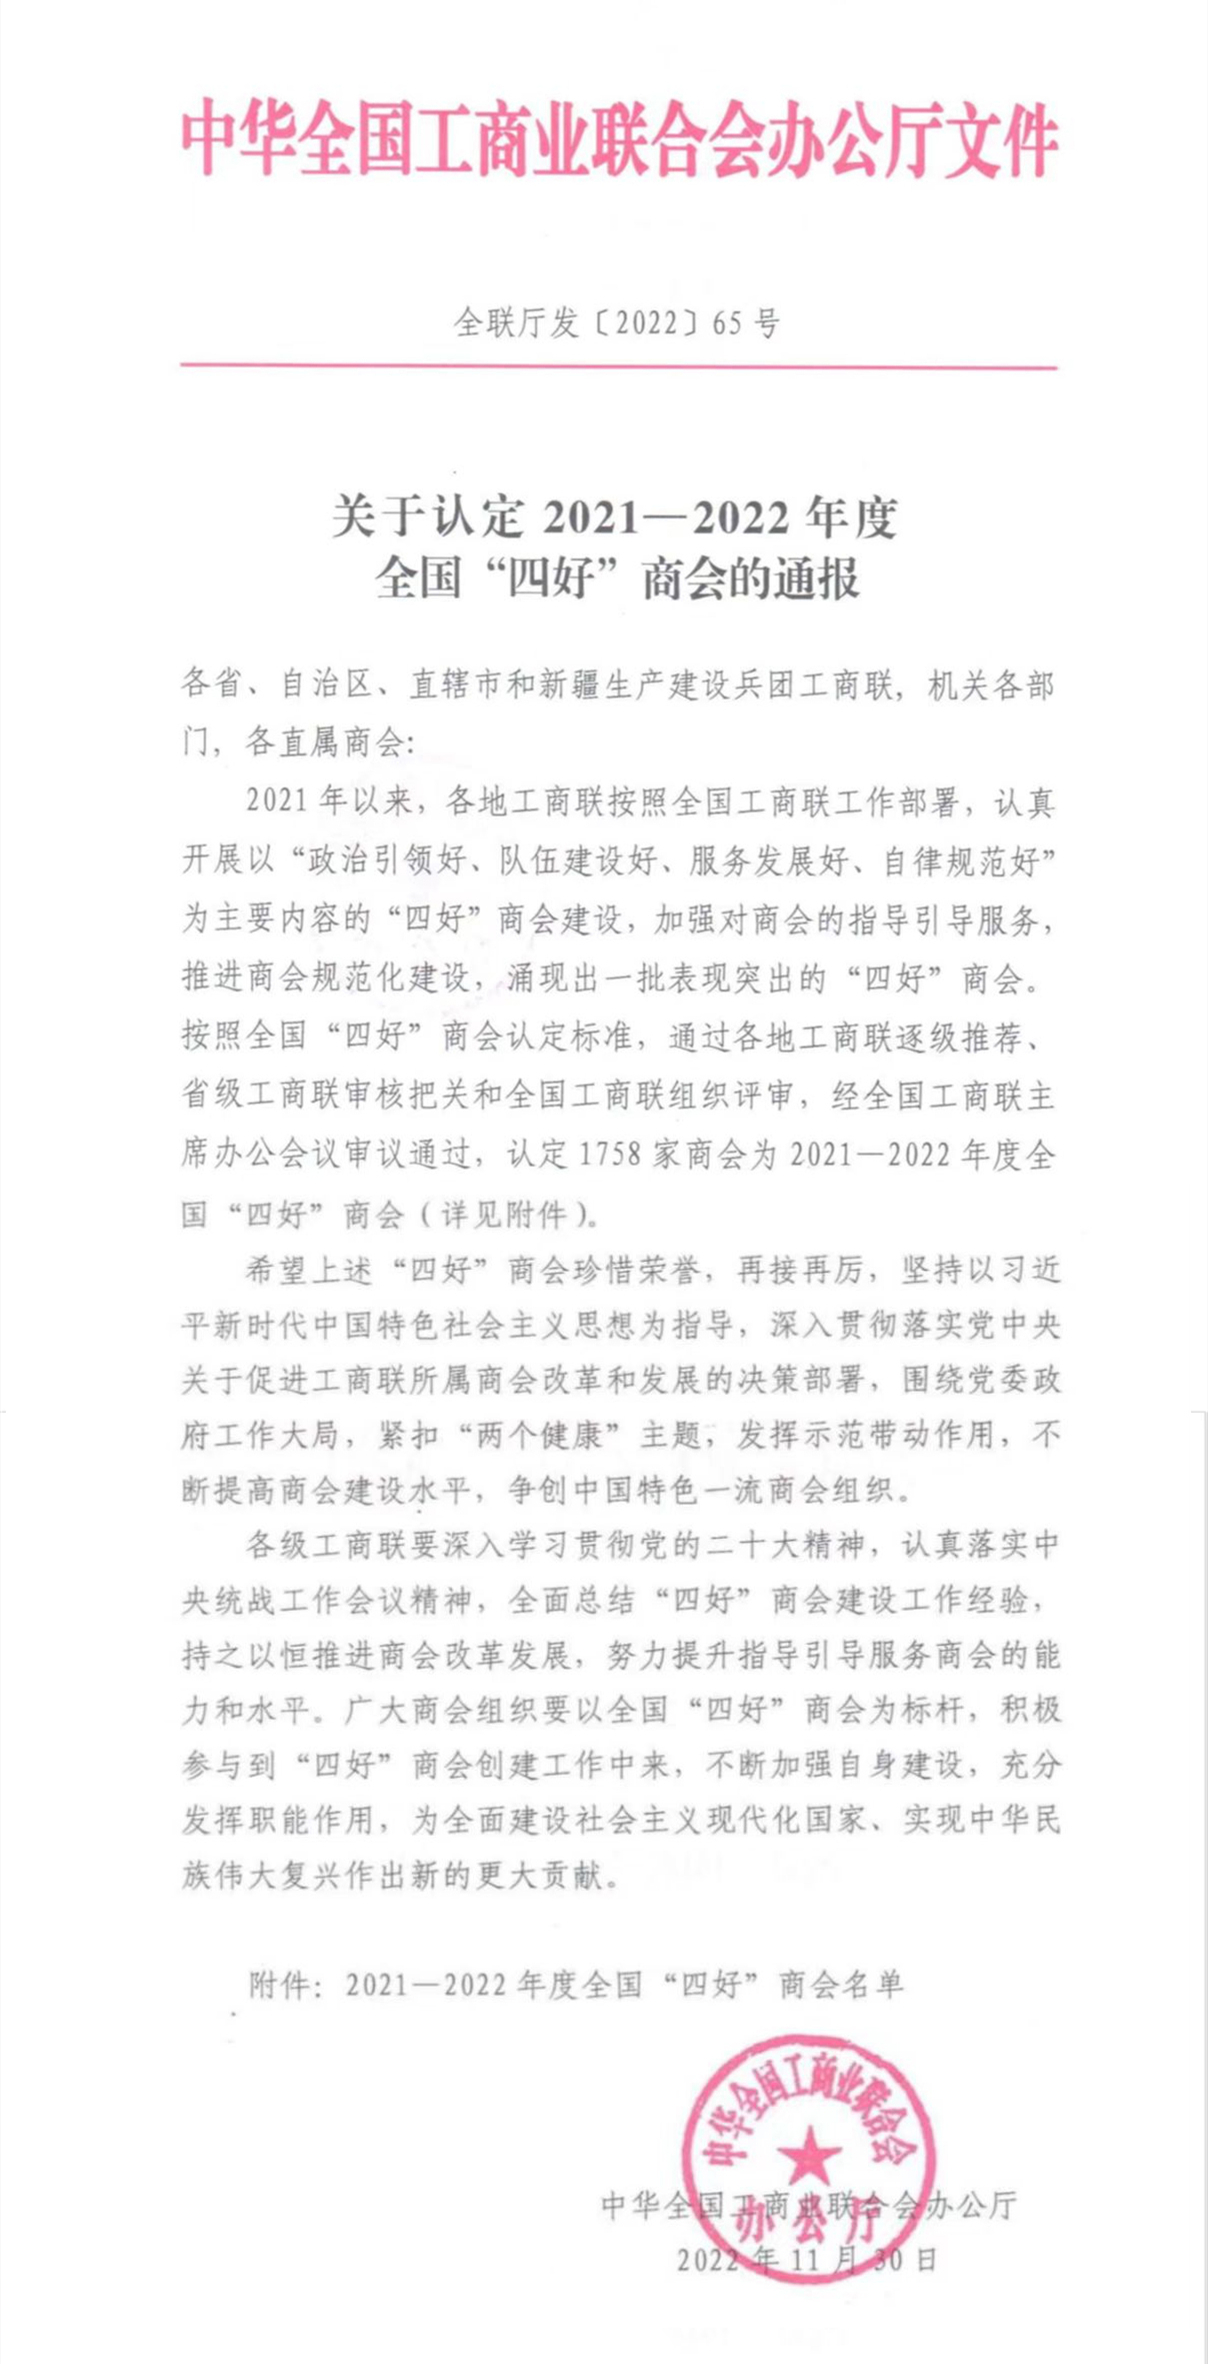 热烈祝贺黑龙江省潮汕商会 荣获2021-2022年度全国工商联“四好”称号(图1)